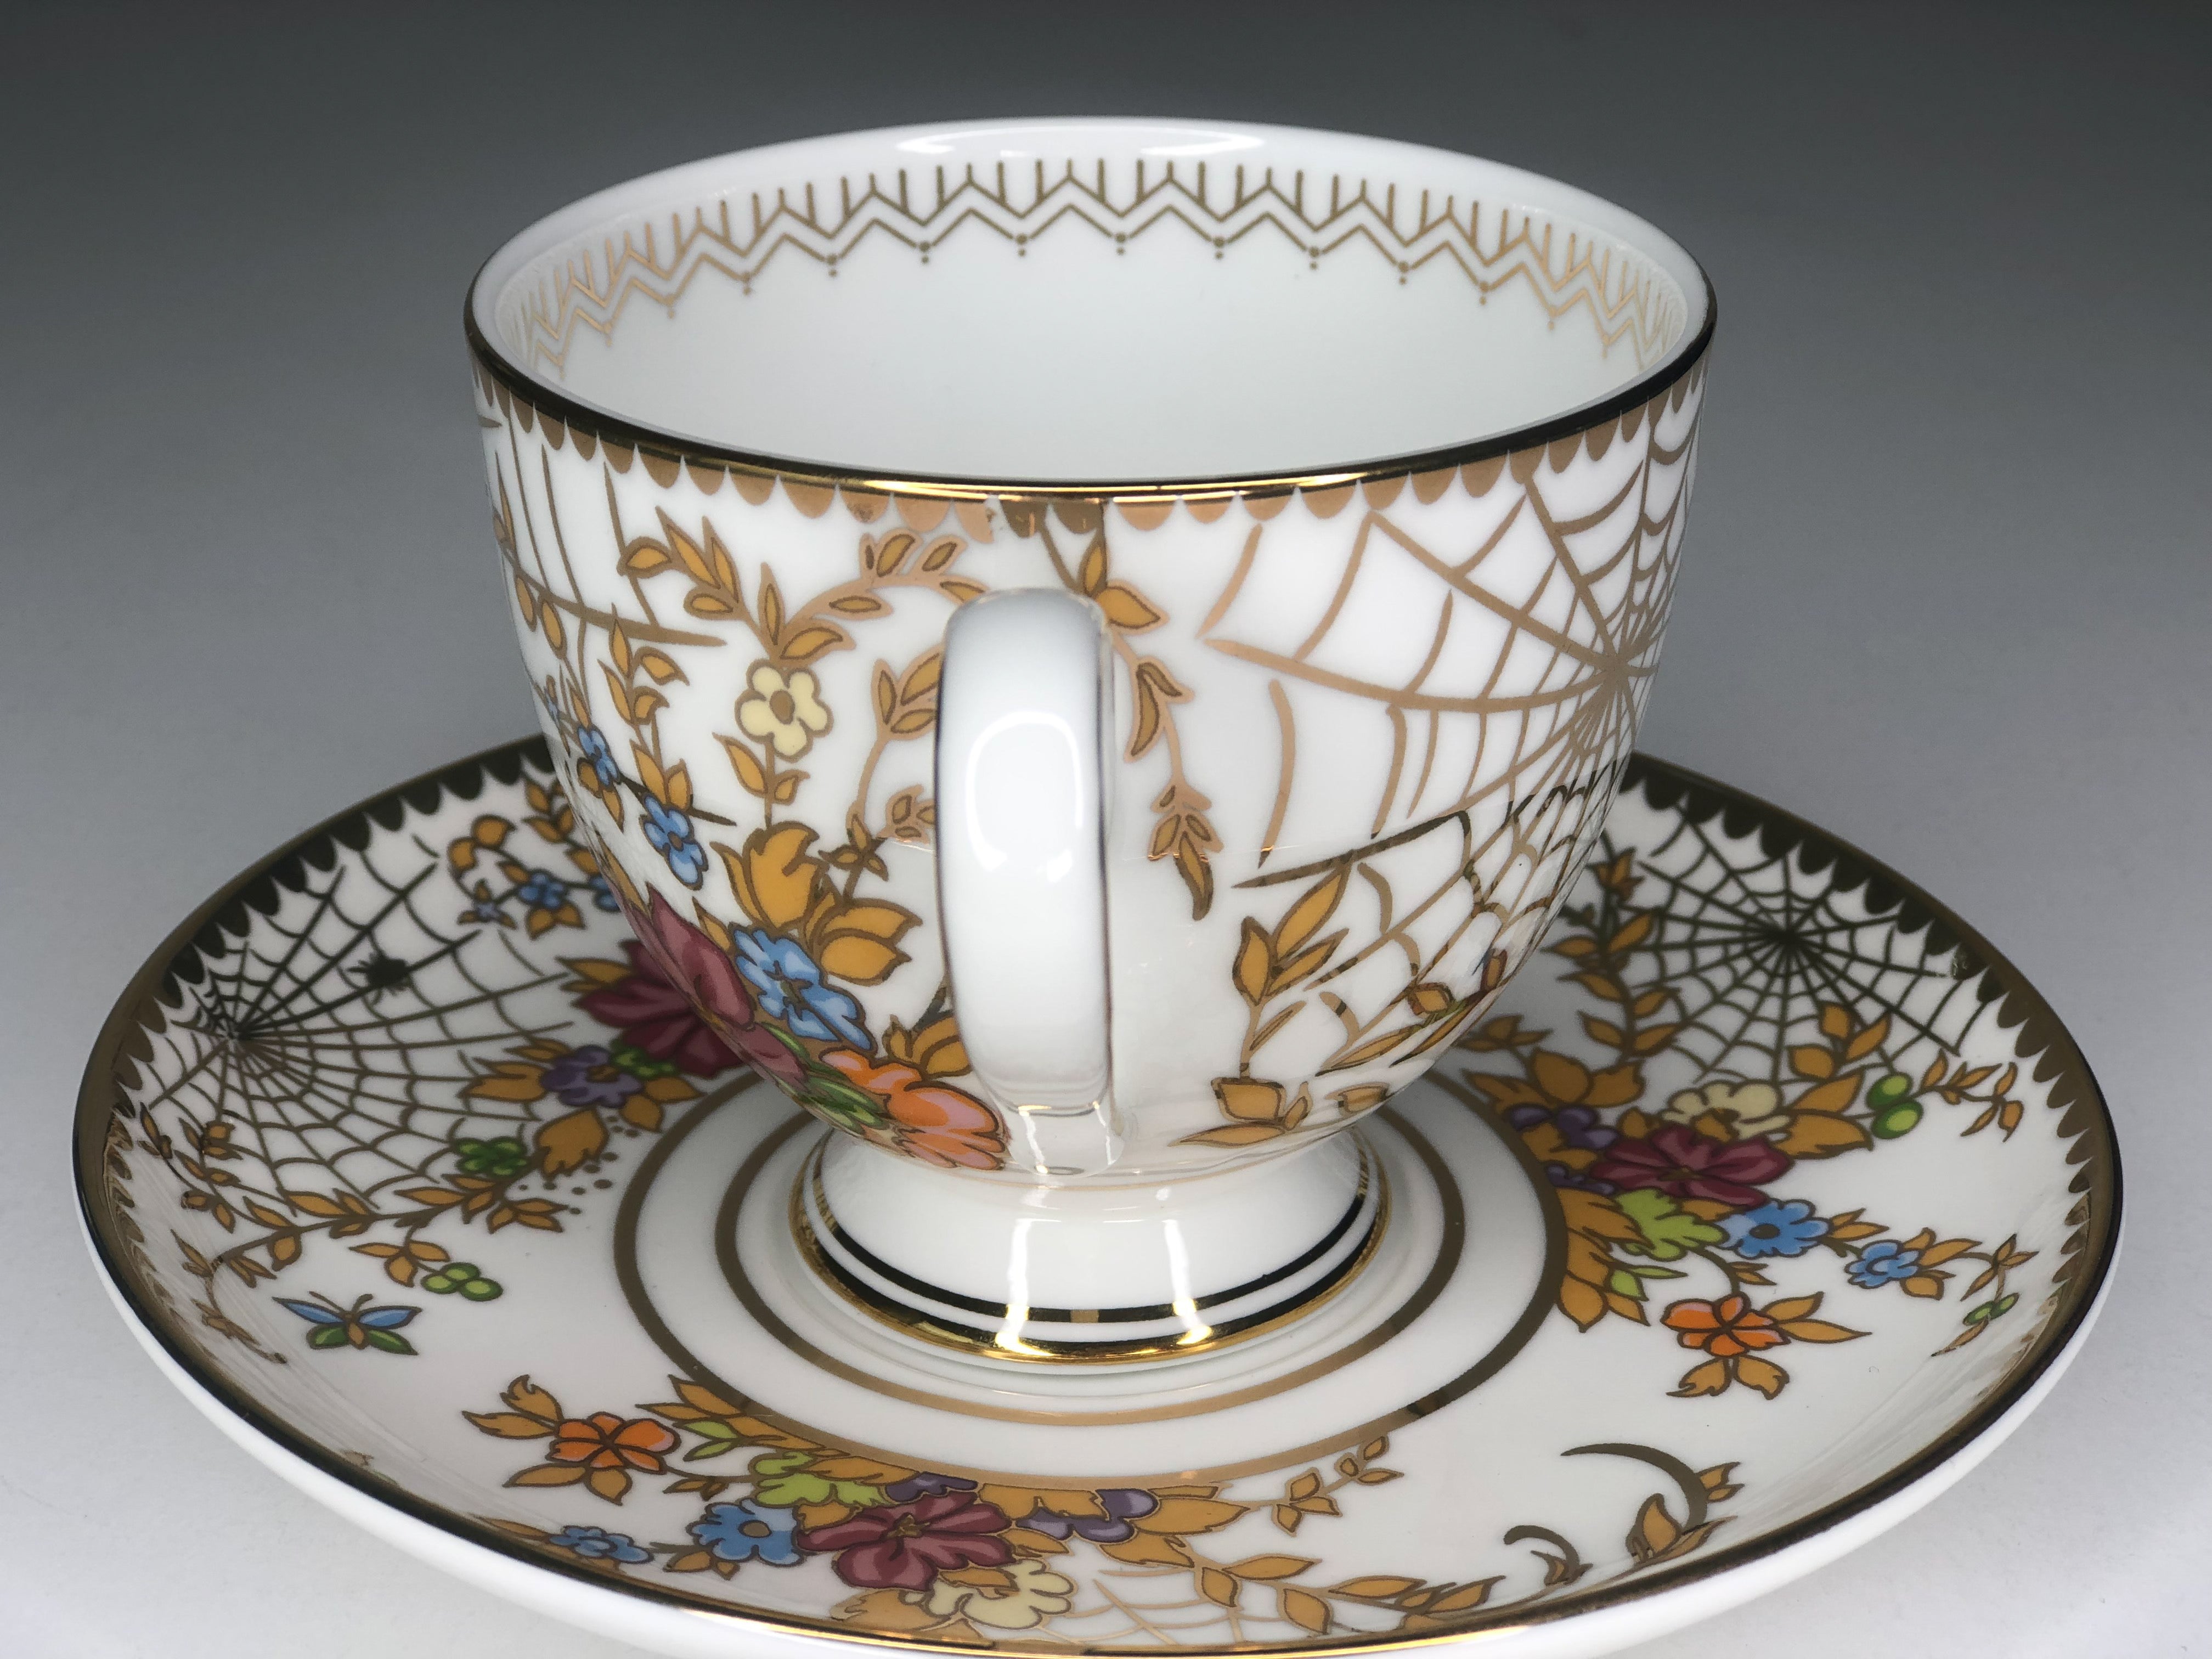 Spiderweb Tea Cup & Saucer Set